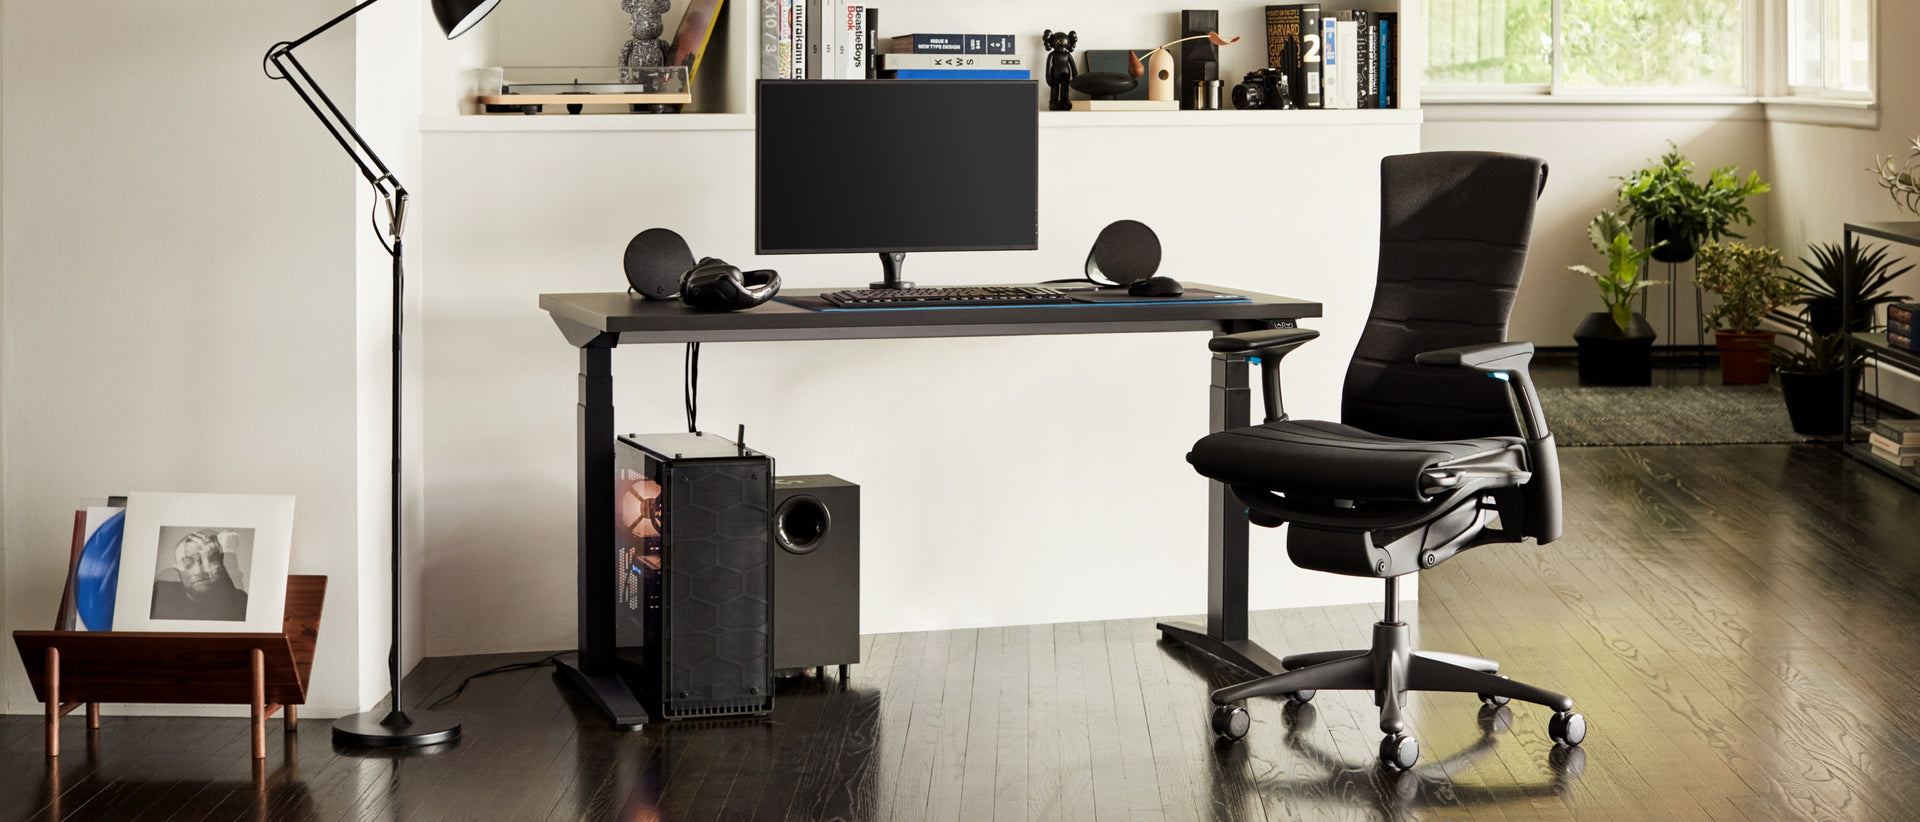 낮시간에 Embody Gaming Chair, Ollin Monitor Arm 및 Ratio Gaming Desk를 포함한, 전체 구성을 갖춘 주거 환경.